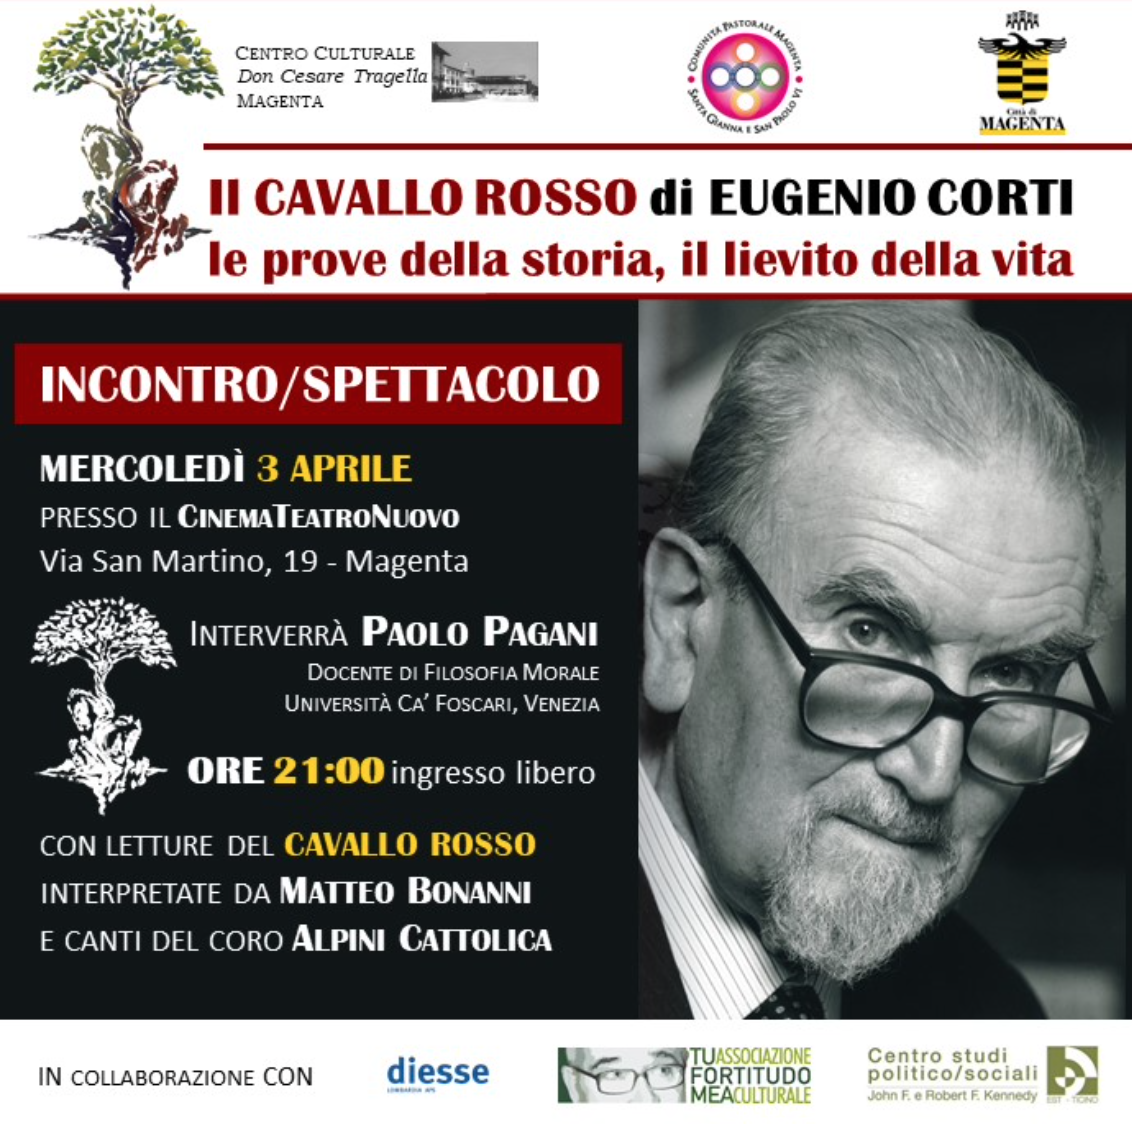 Featured image for “Magenta (Mi): Il cavallo rosso di Eugenio Corti. Incontro/Spettacolo”